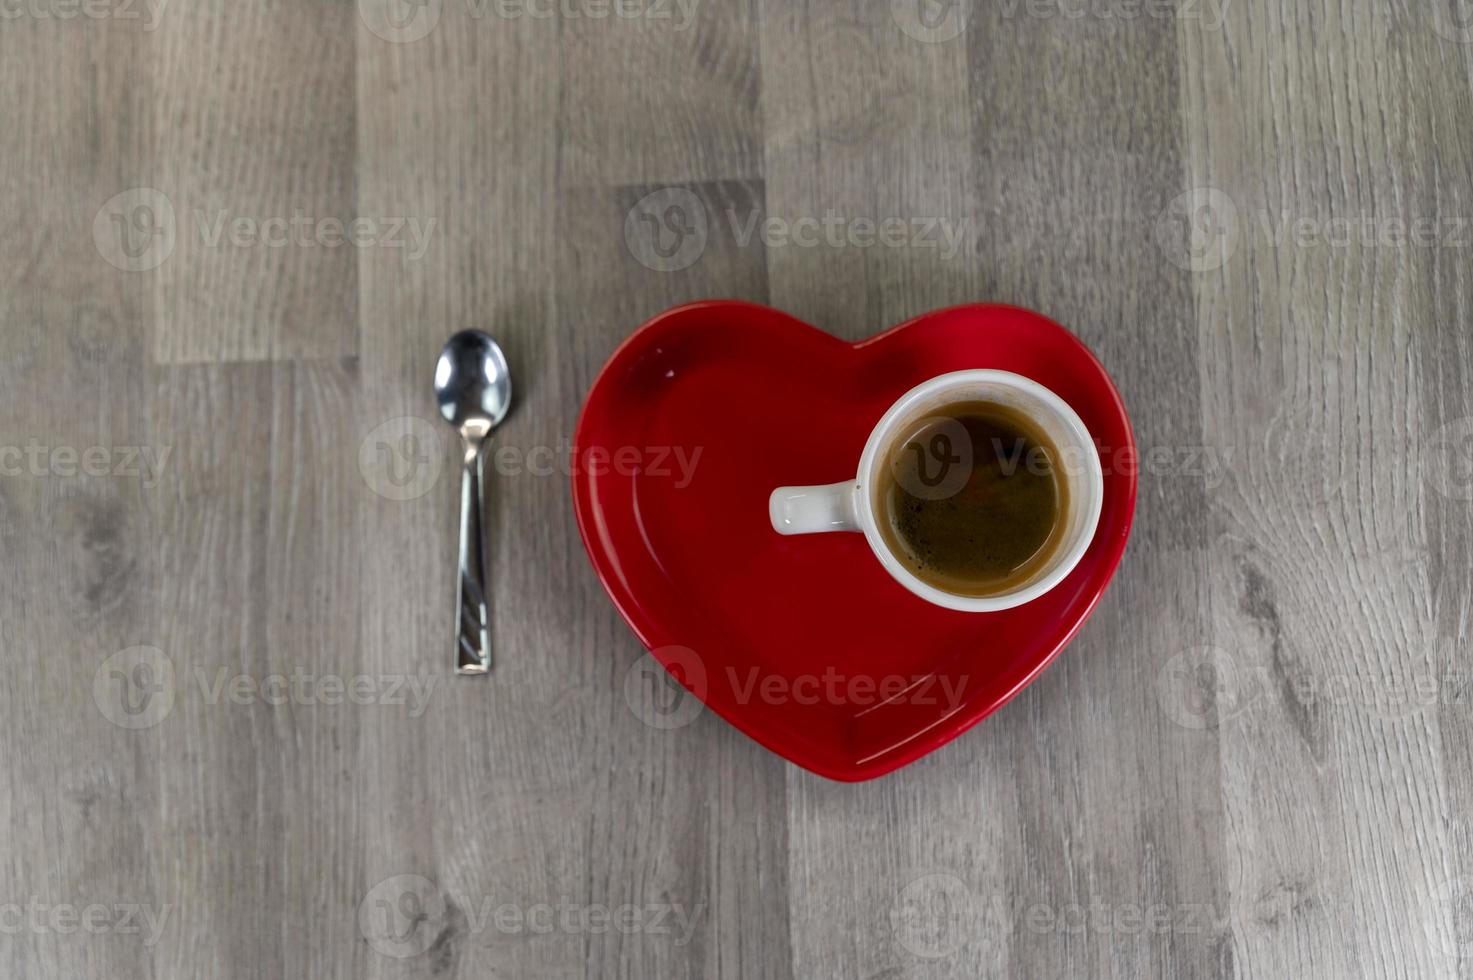 en kopp kaffe med ett hjärtformat fat foto